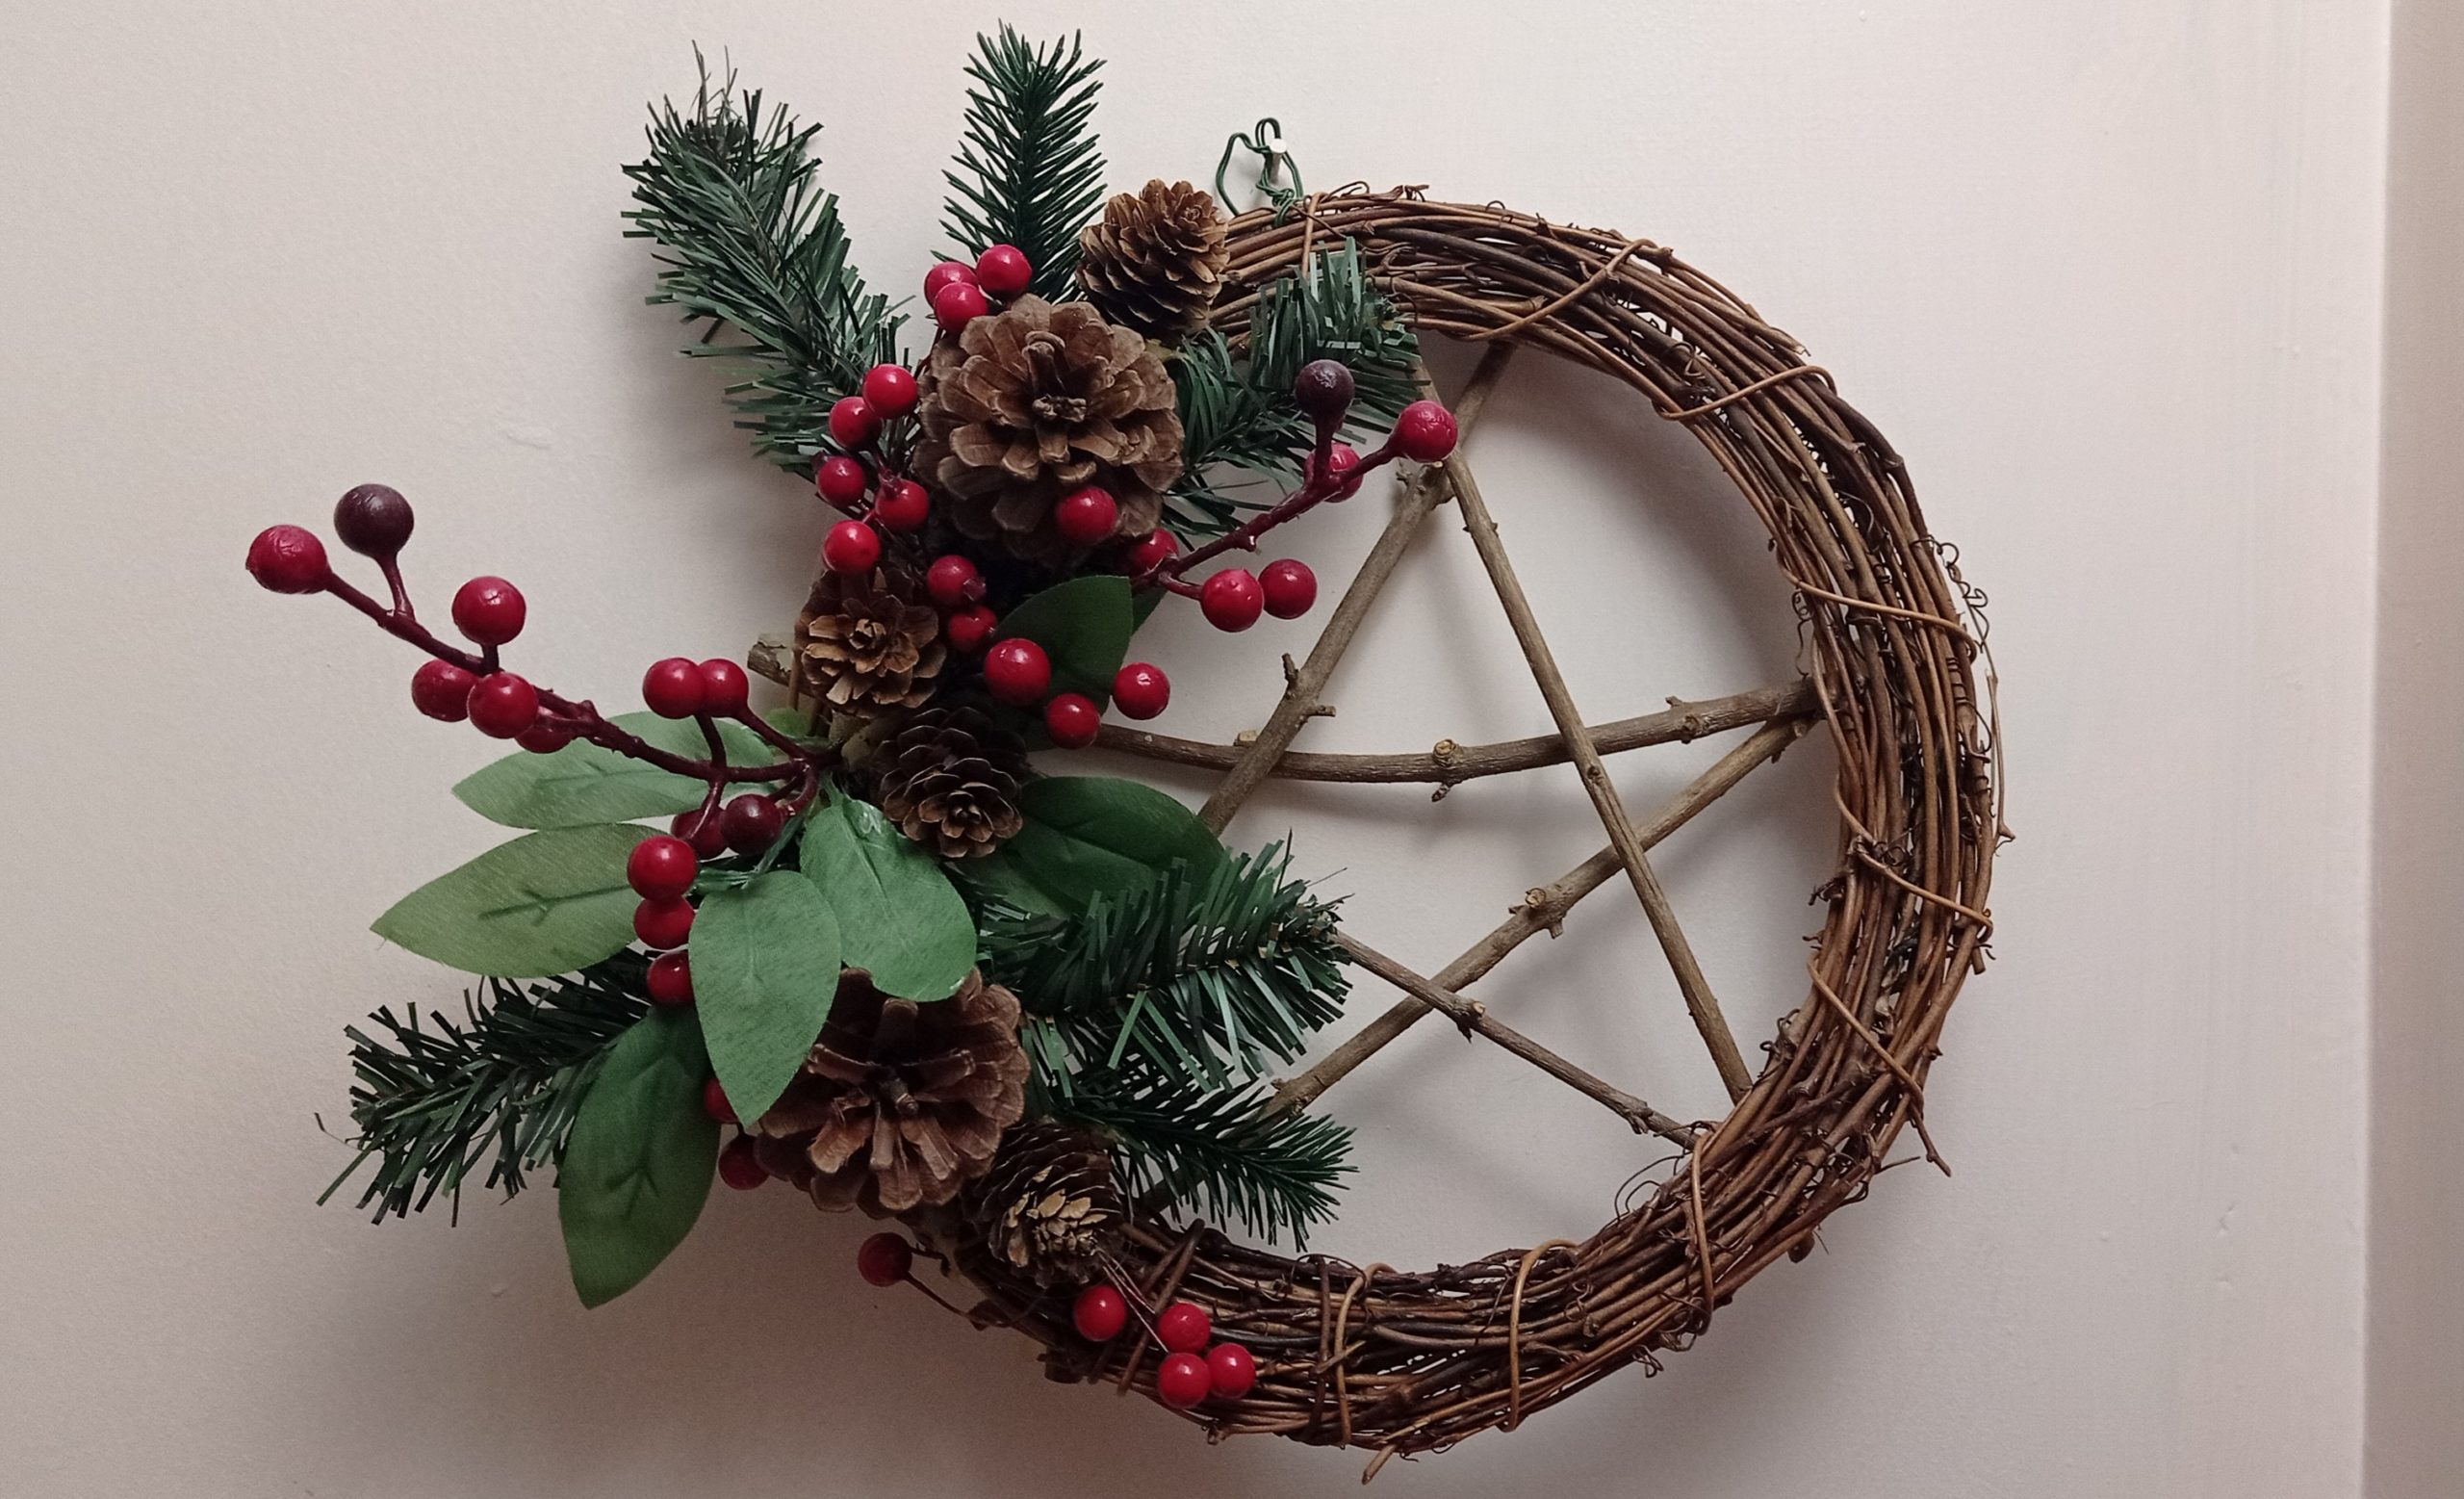 Conheça o Yule, celebração pagã que se assemelha ao Natal cristão | ND Mais